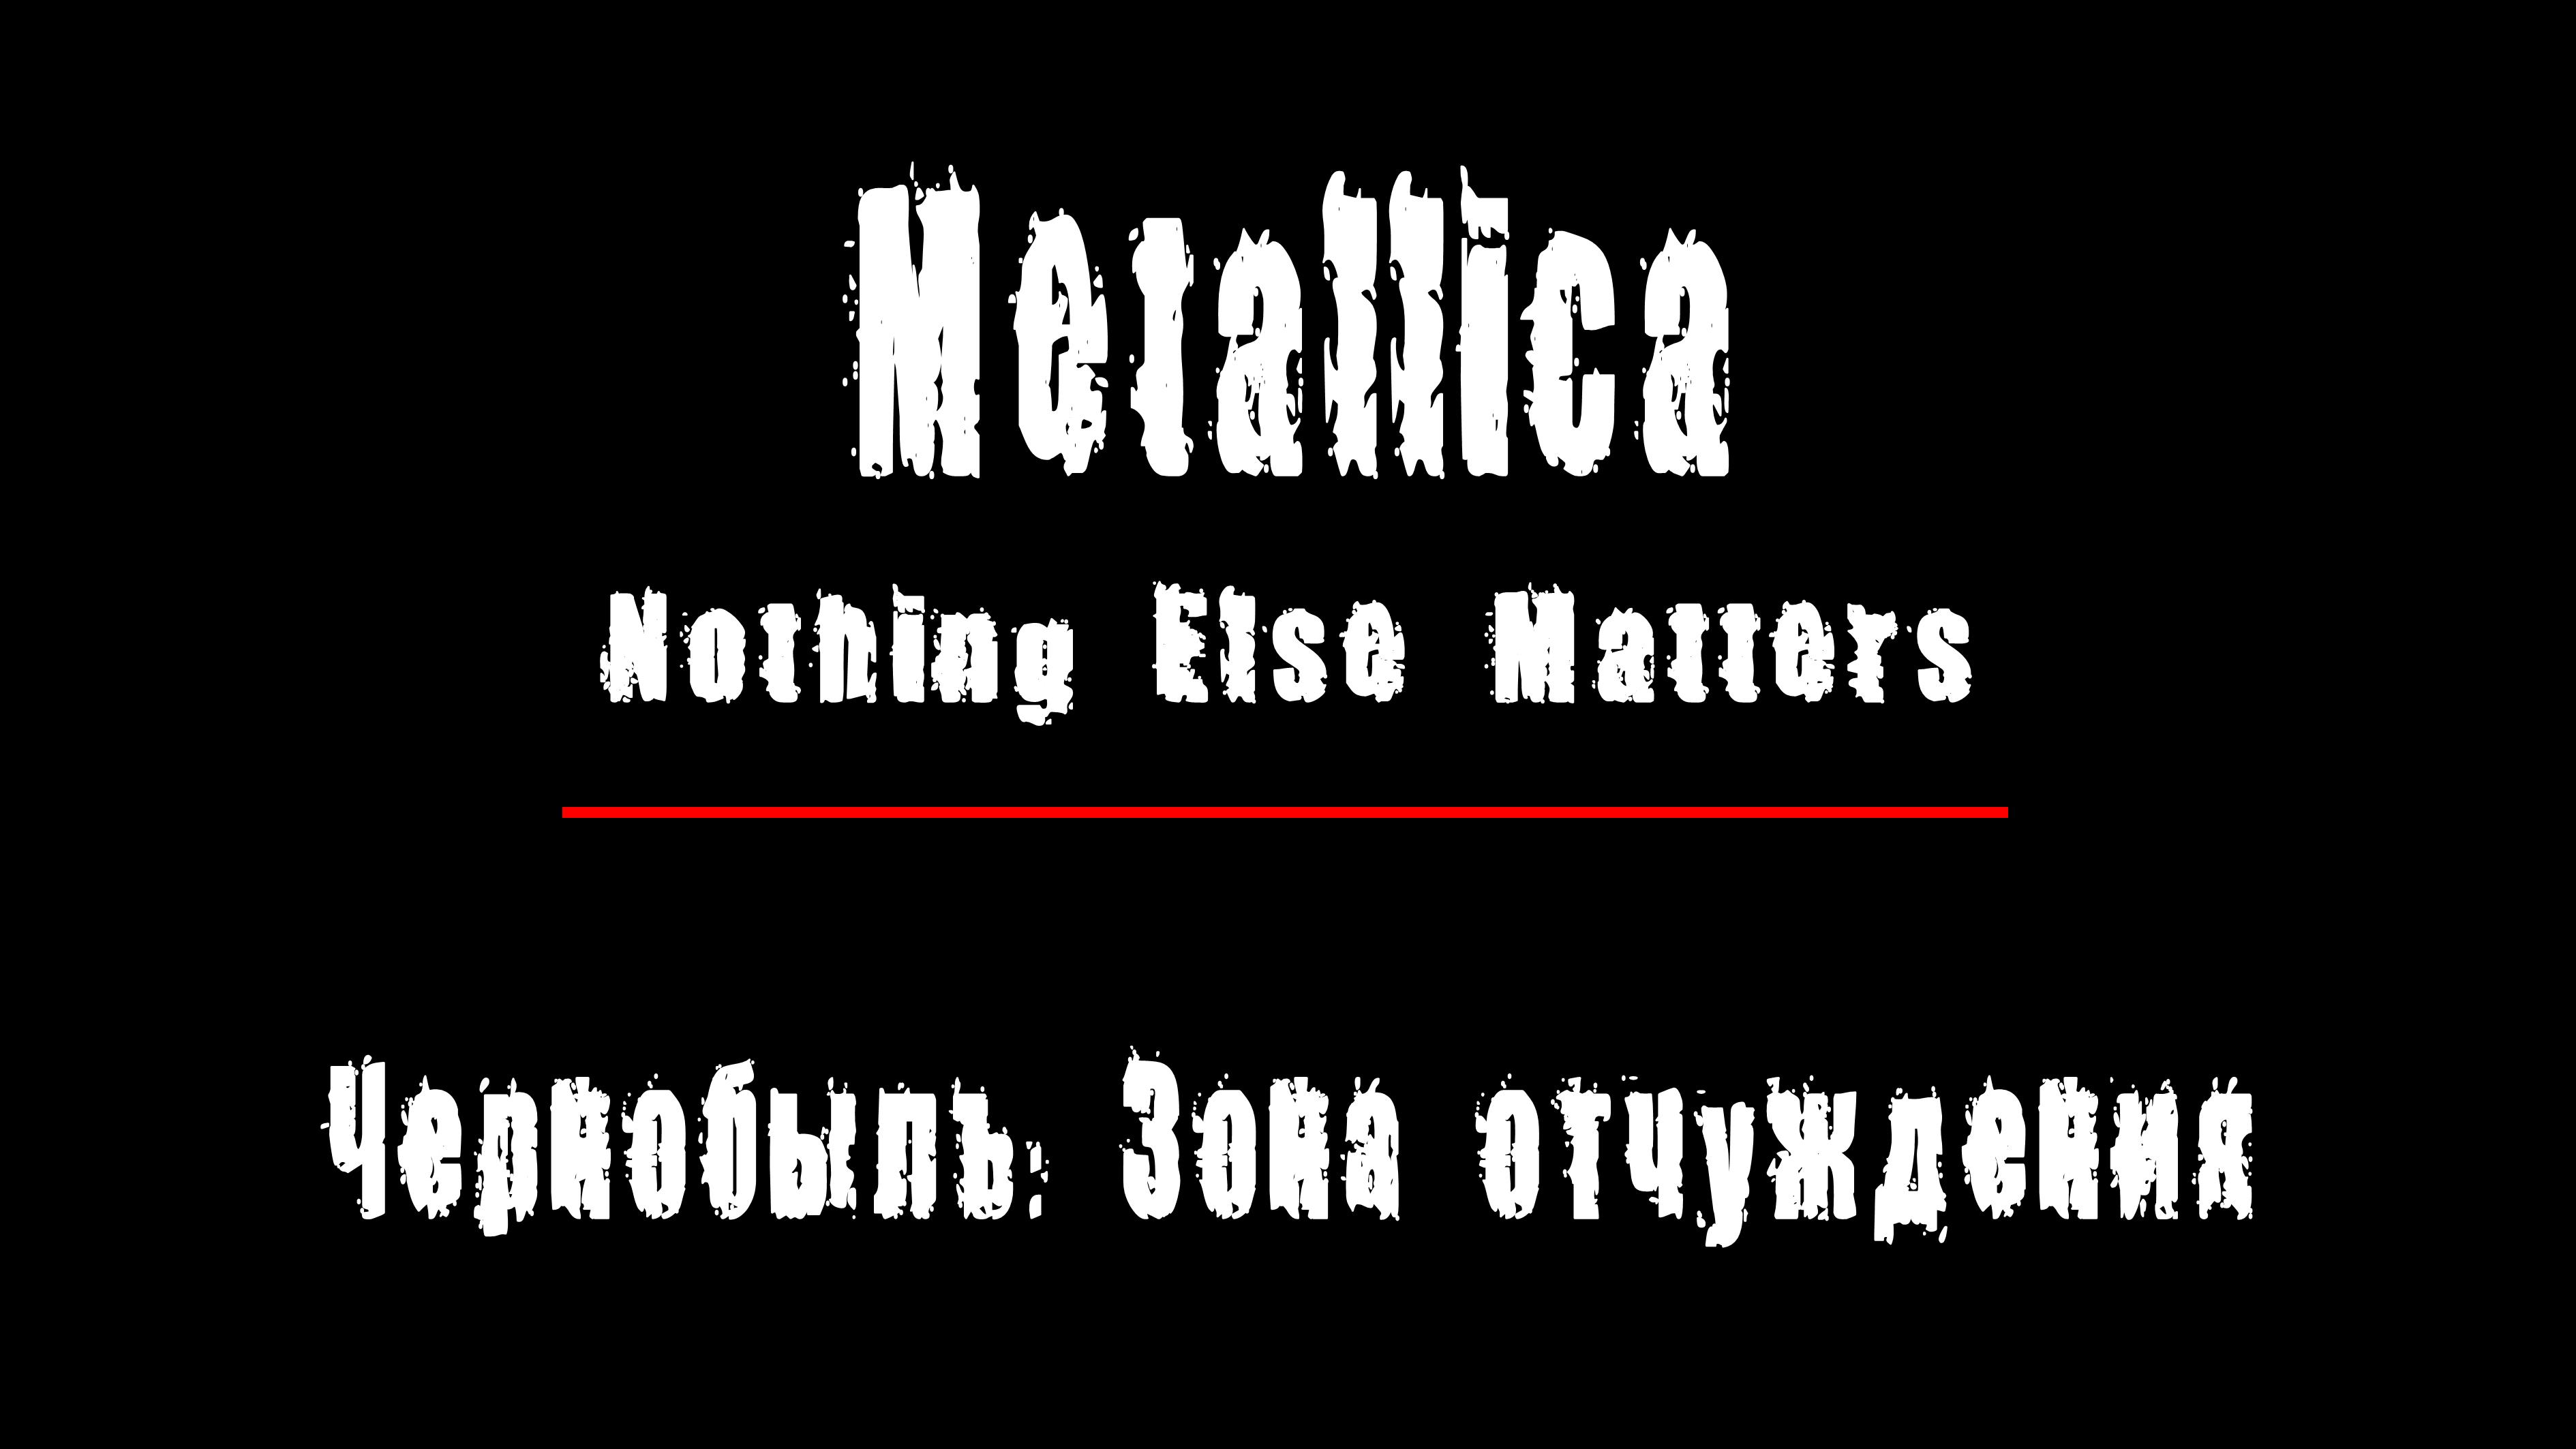 "NOTHING ELSE MATTERS" - группа "Metallica". Чернобыль: Зона Отчуждения, Припять.